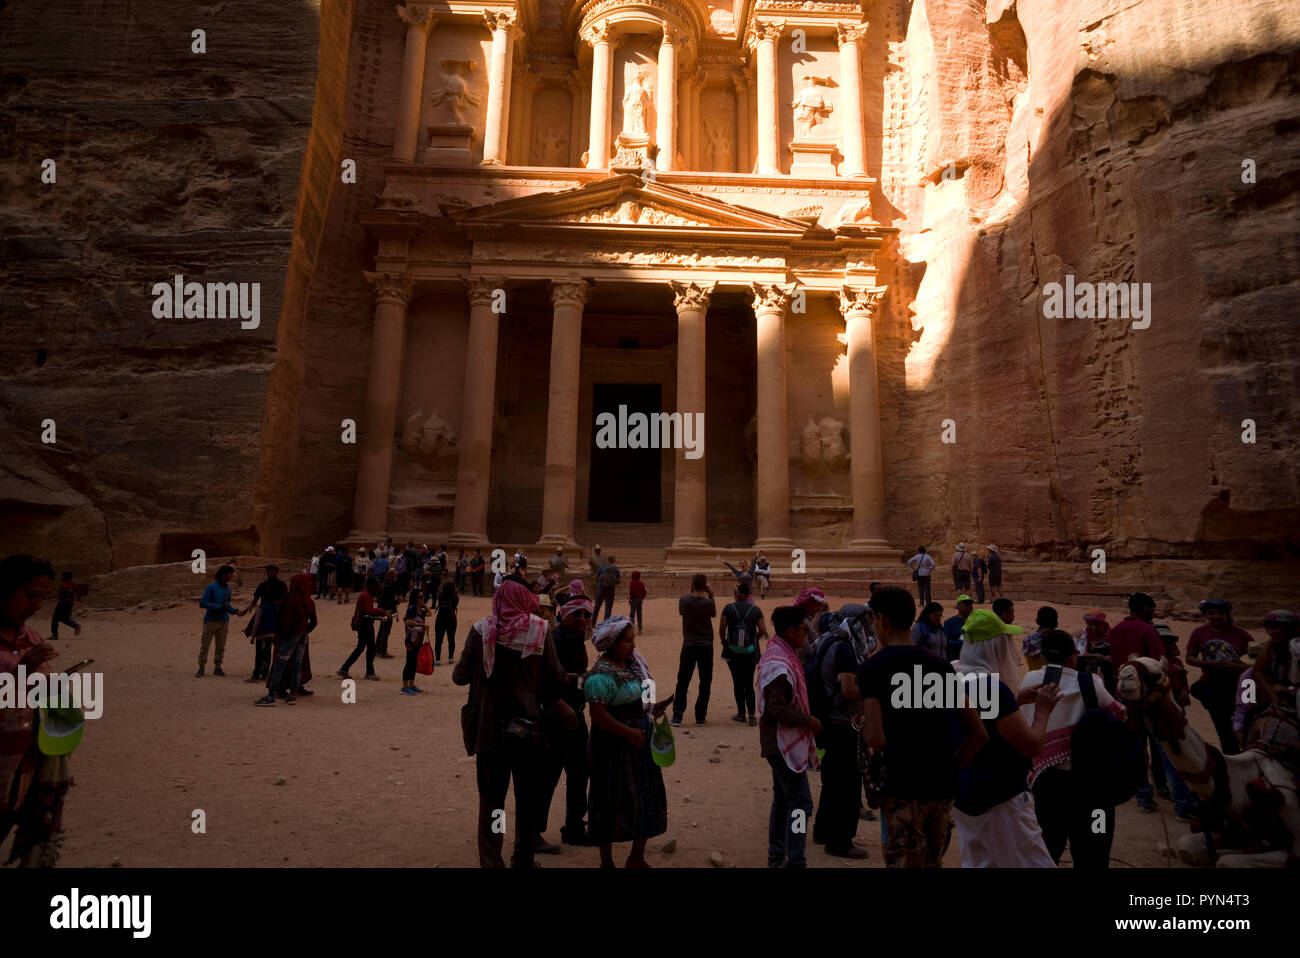 Edifici scolpiti nella roccia sono visibili in Petra parco archeologico, in Giordania, 24 ottobre 2018. Foto Stock